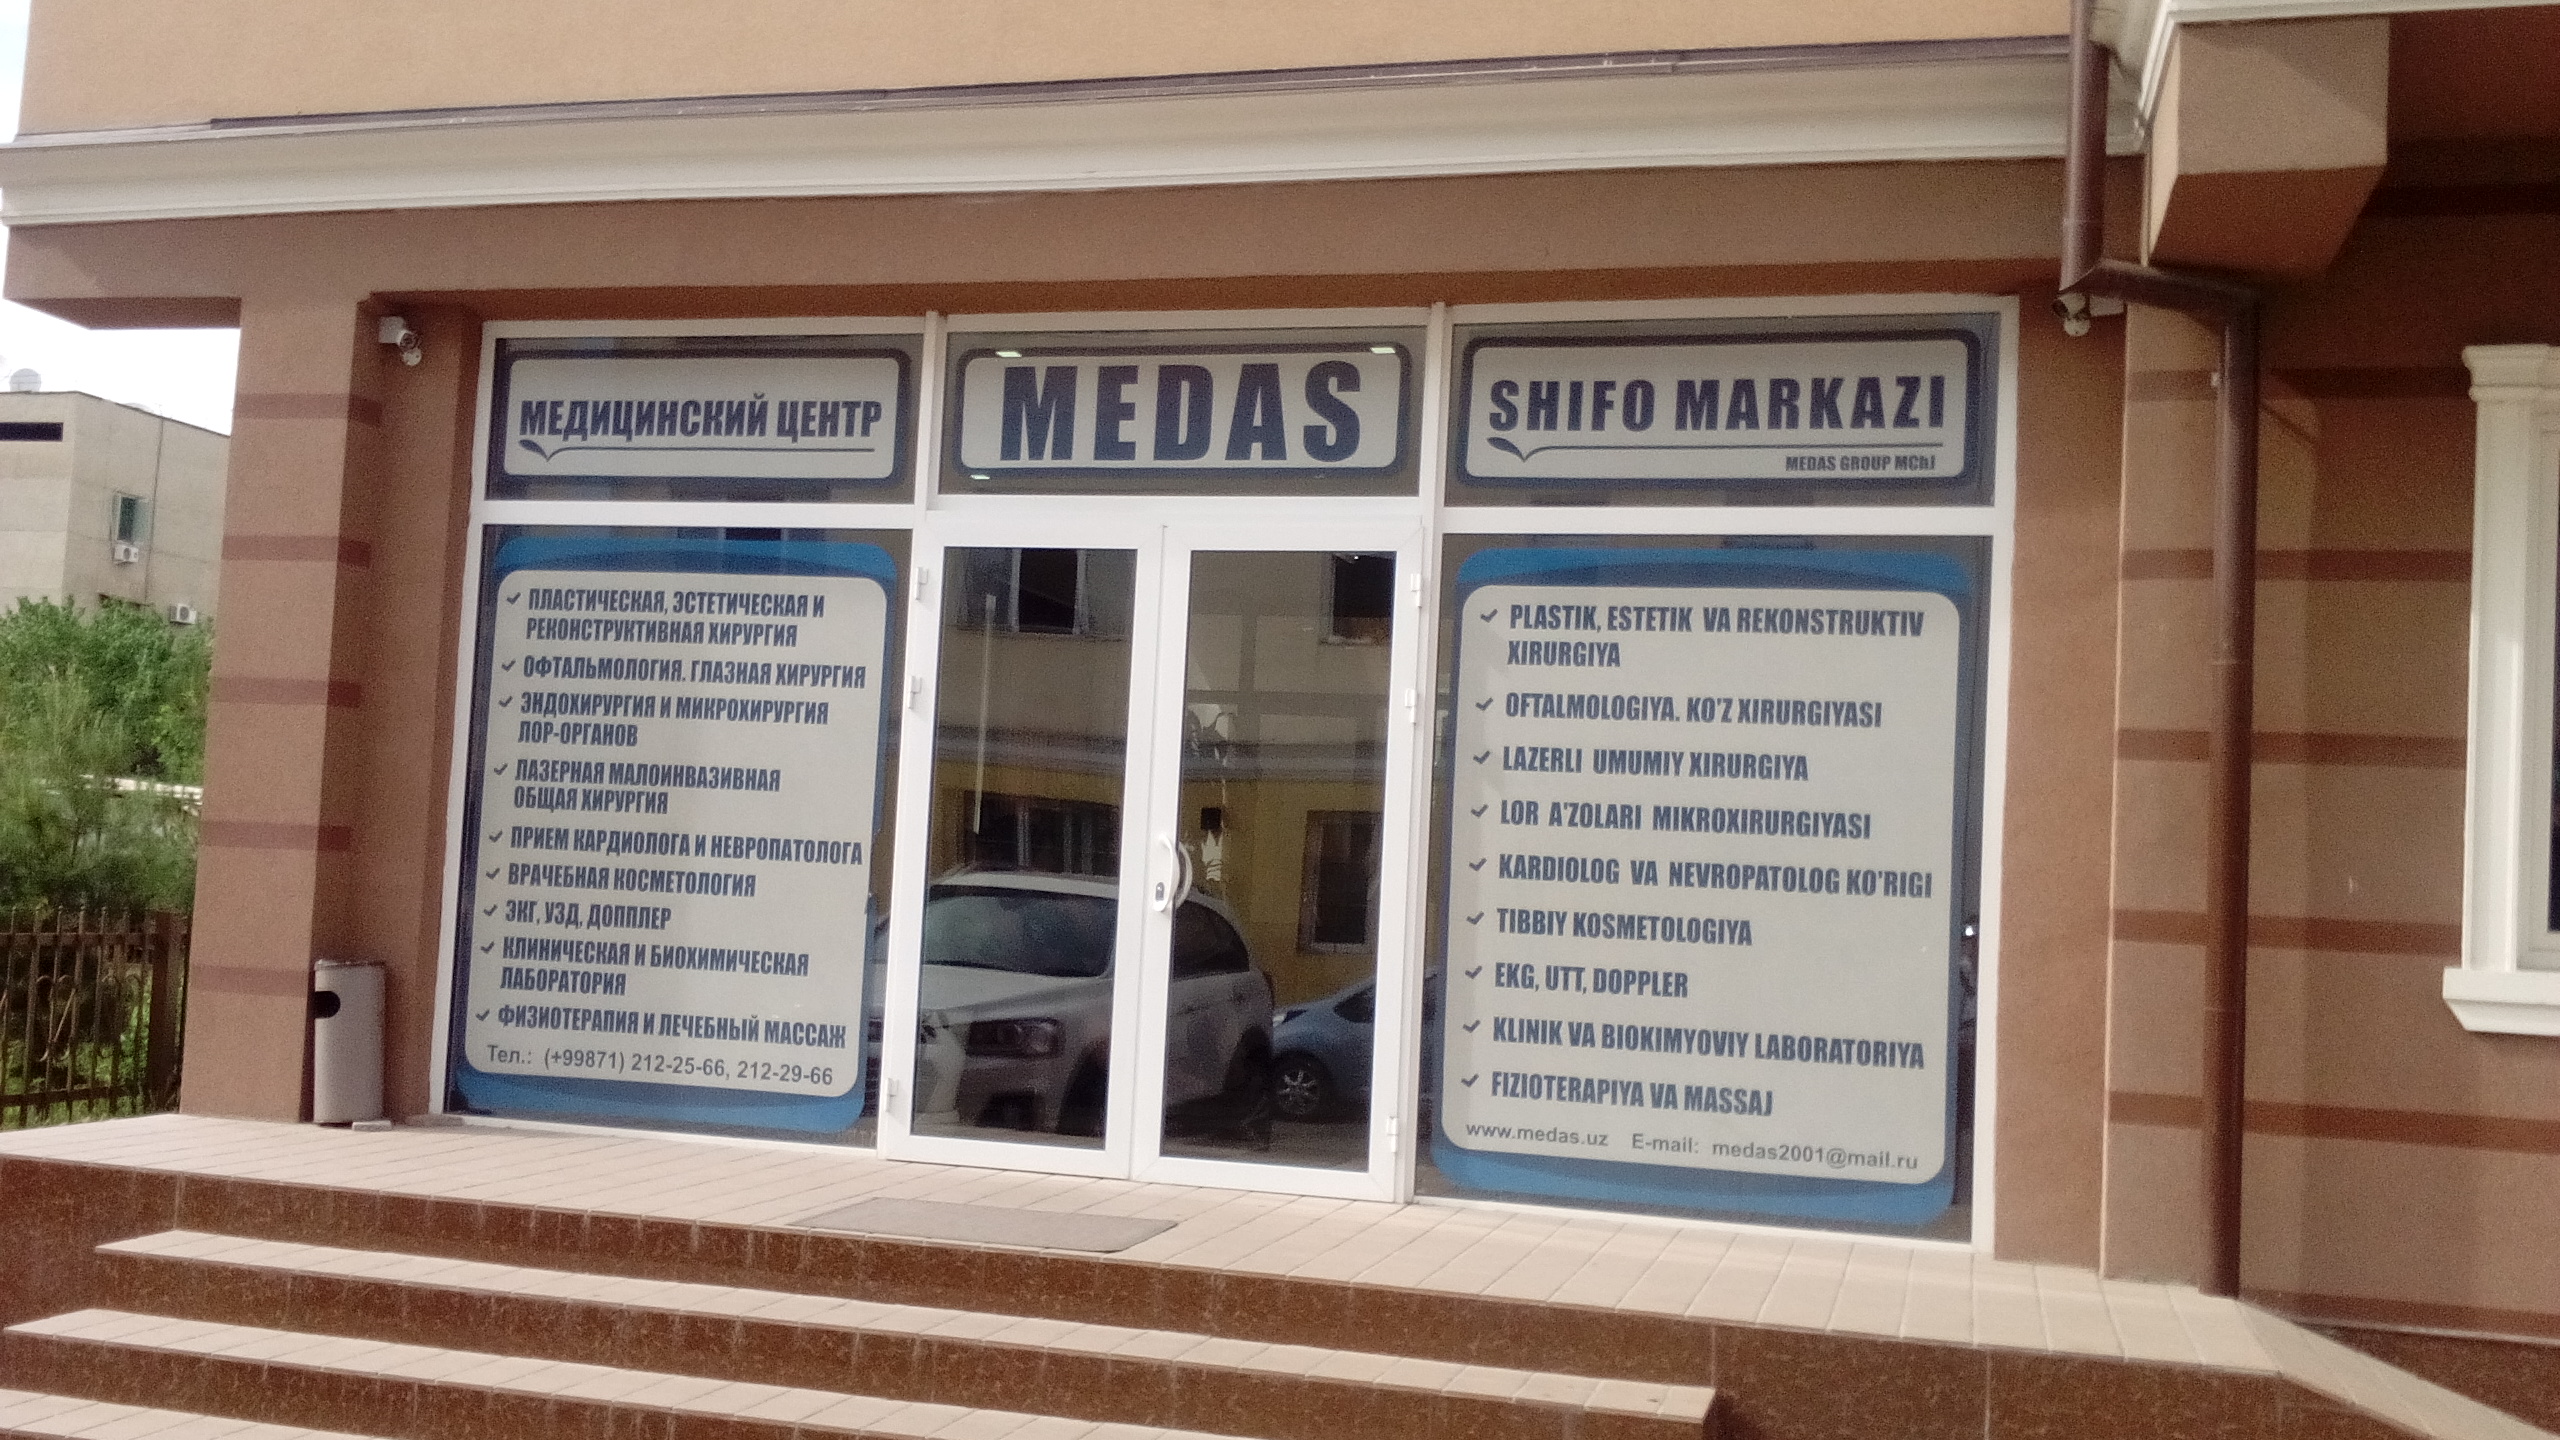 Медицинский центр "MEDAS"